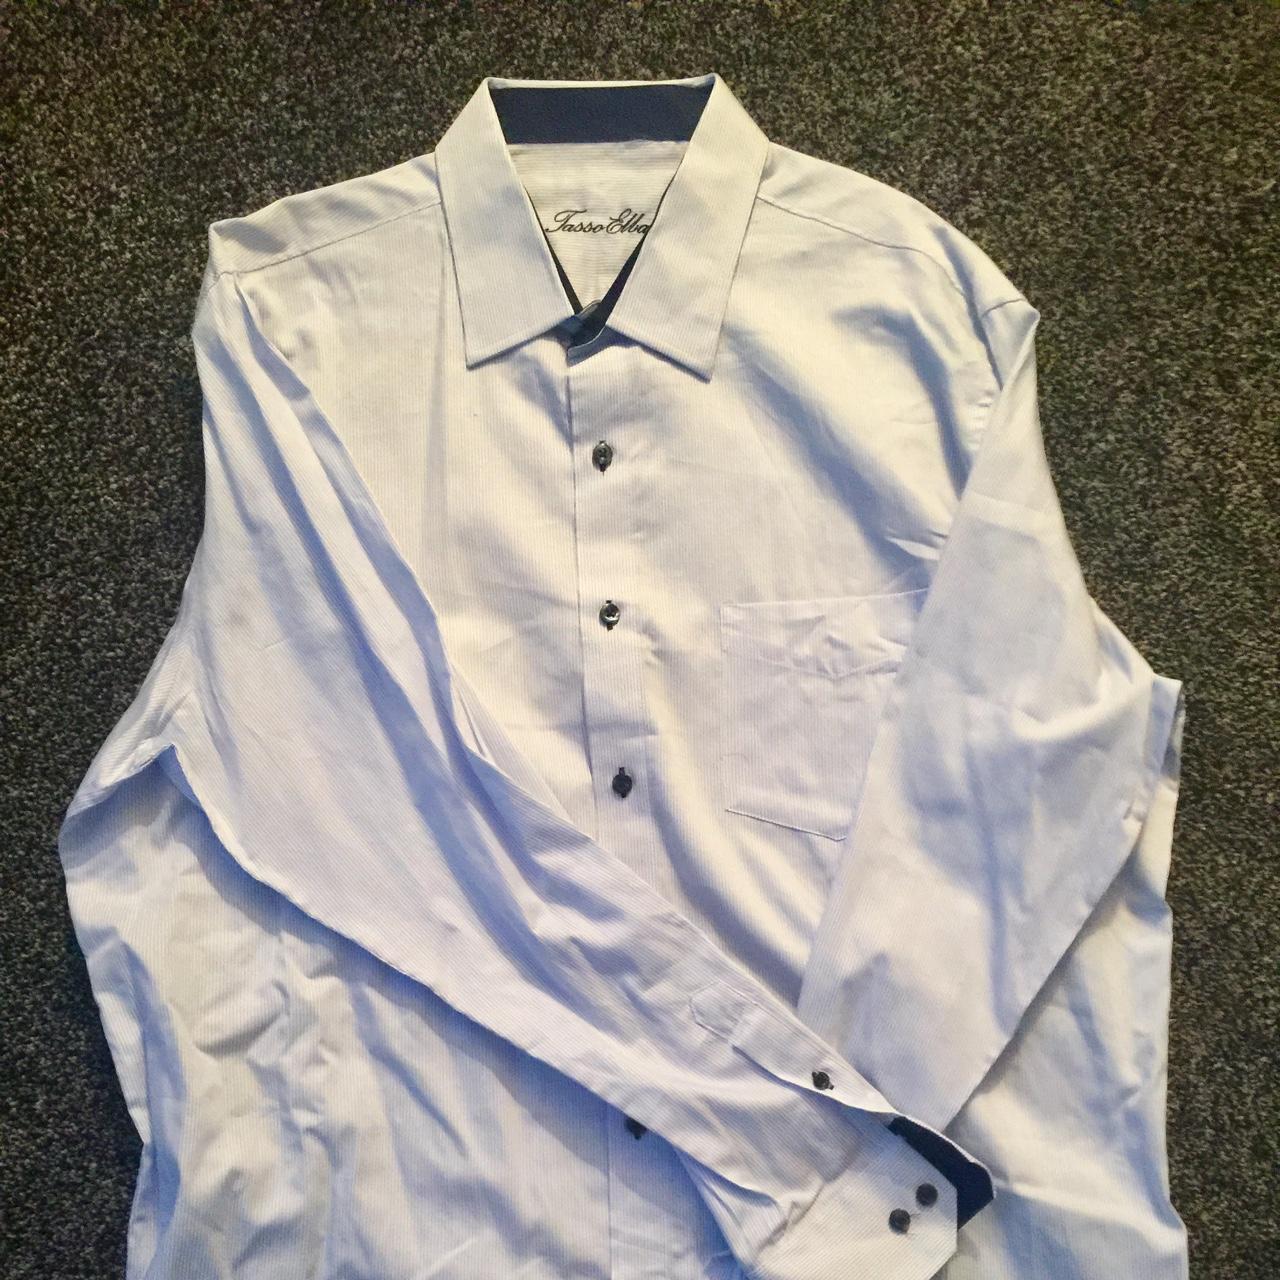 Tasso Elba Shirt in XL - Depop